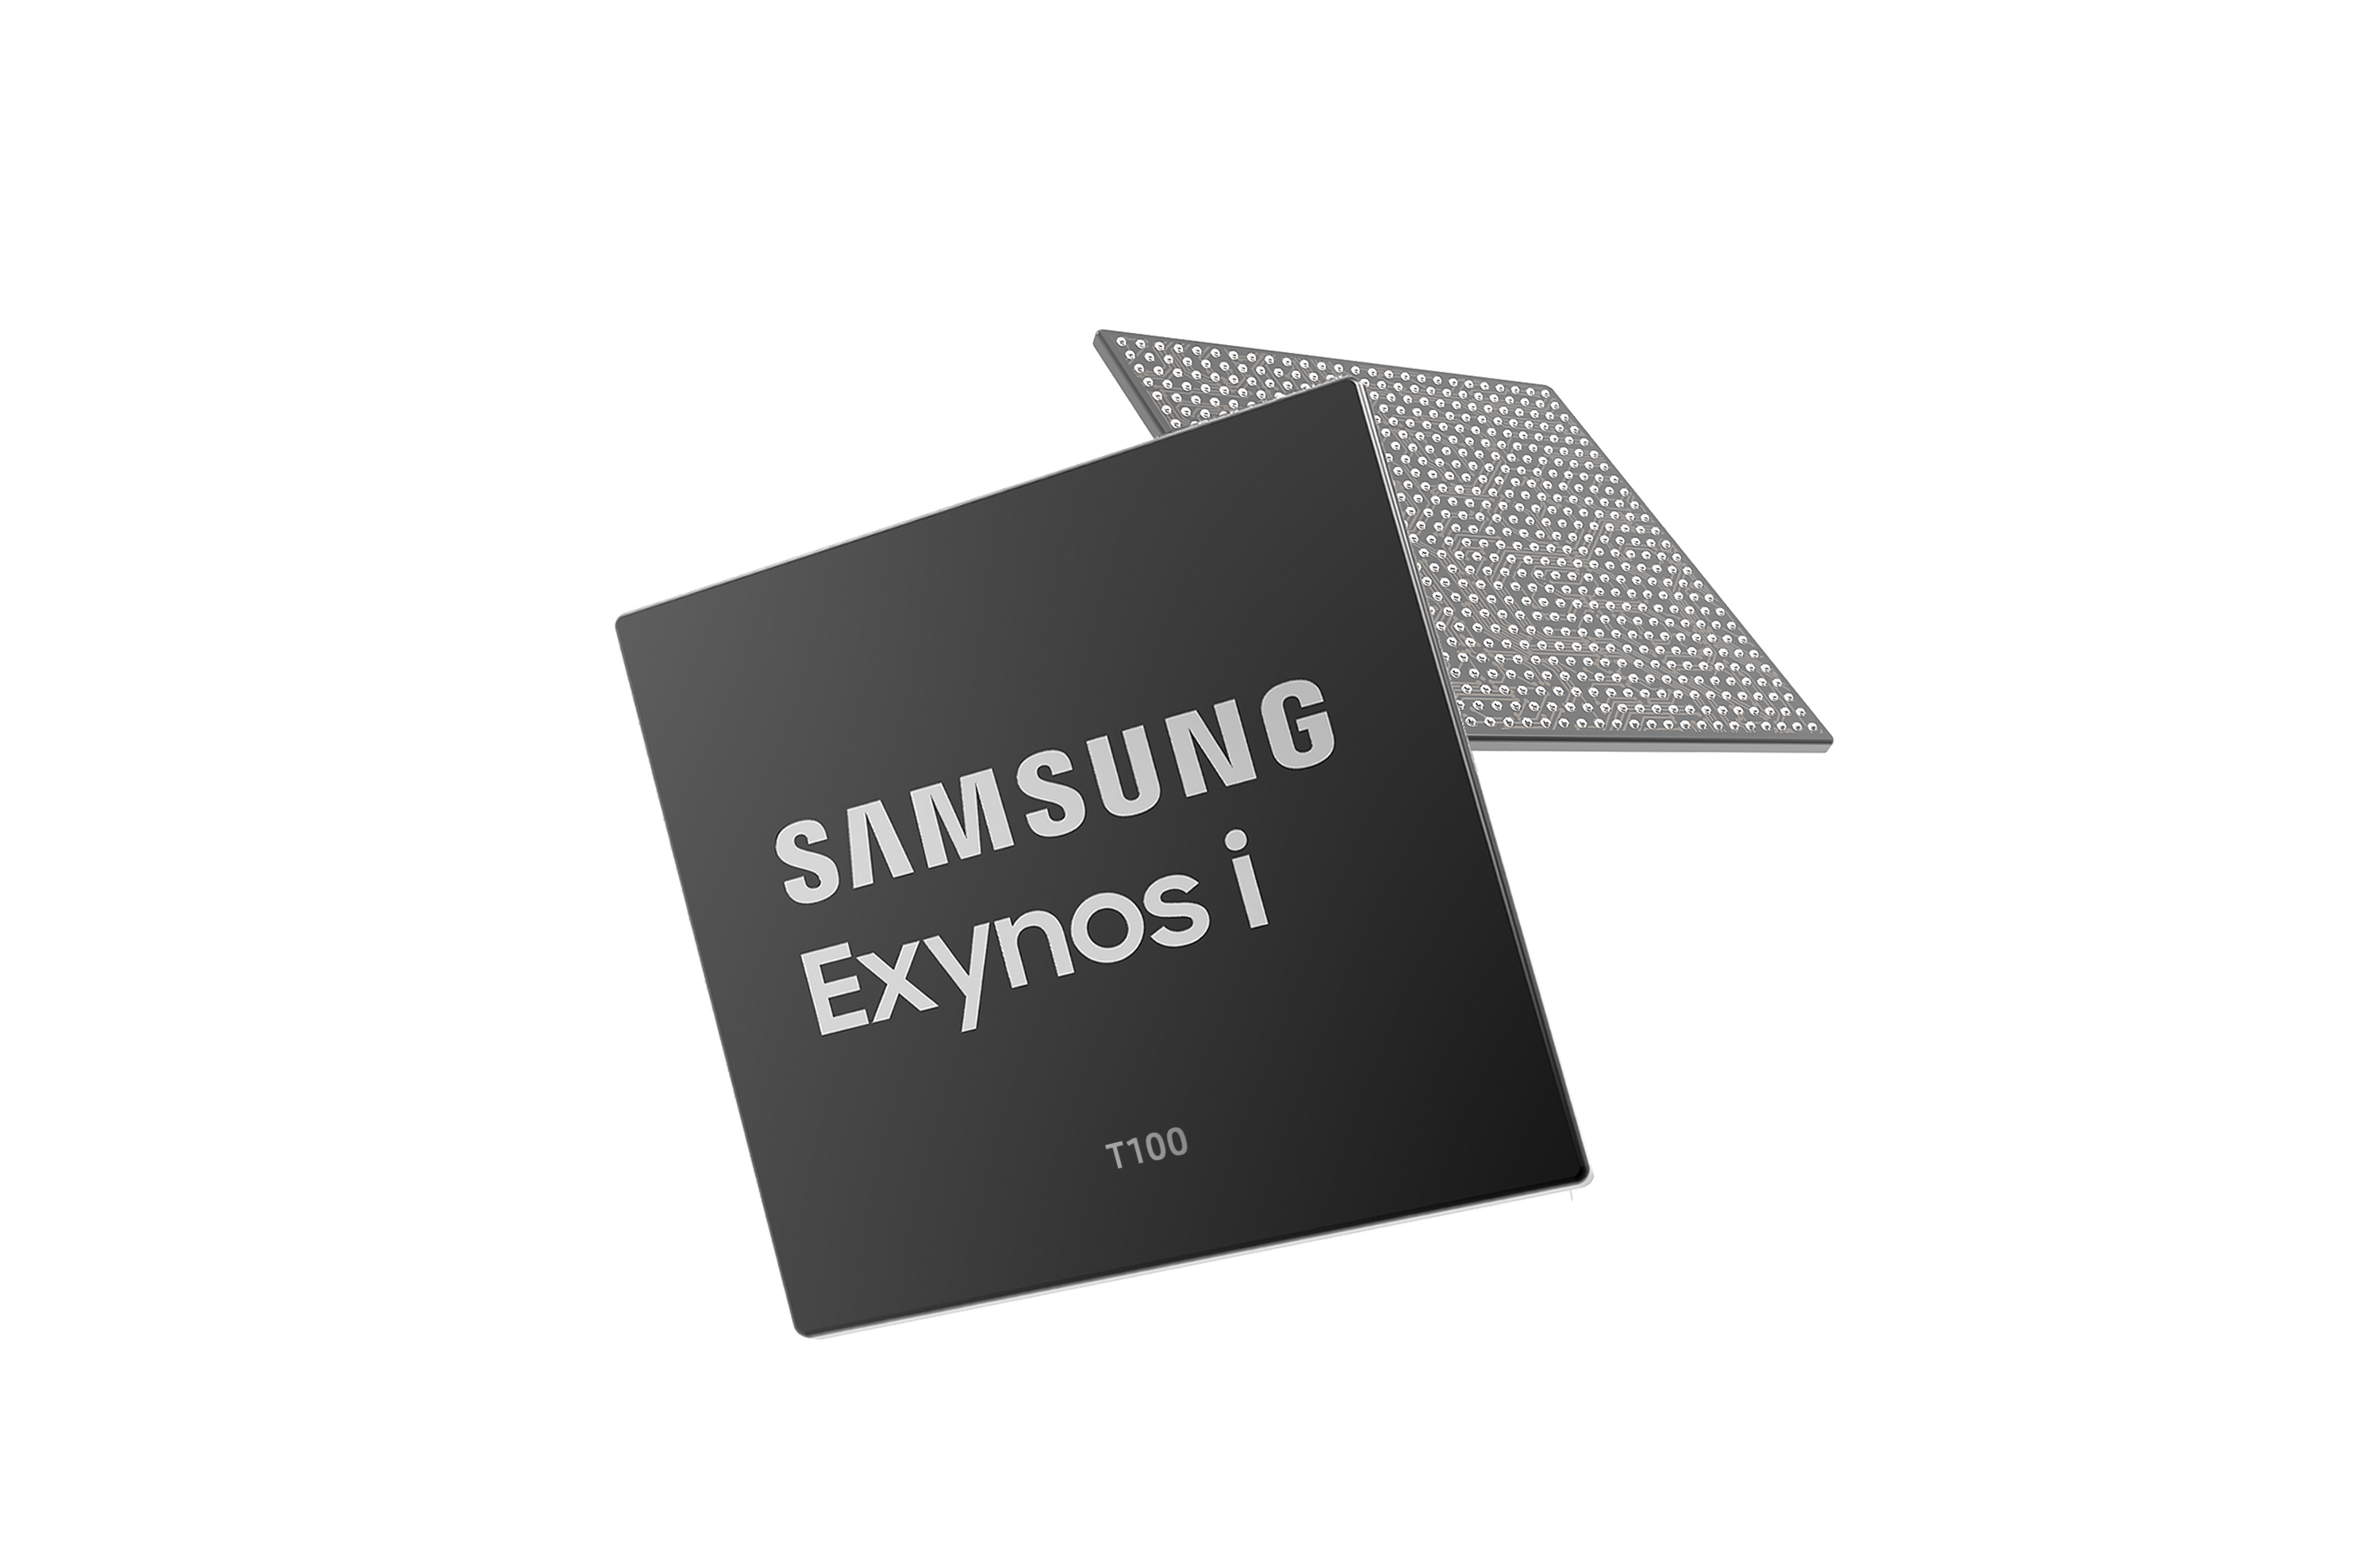 "سامسونج إلكترونيكس  تعلن عن معالجها الجديد Exynos i T100 لزيادة الأمن والموثوقية في أجهزة تقنيةالإنترنت مع الاتصال قصير المدى